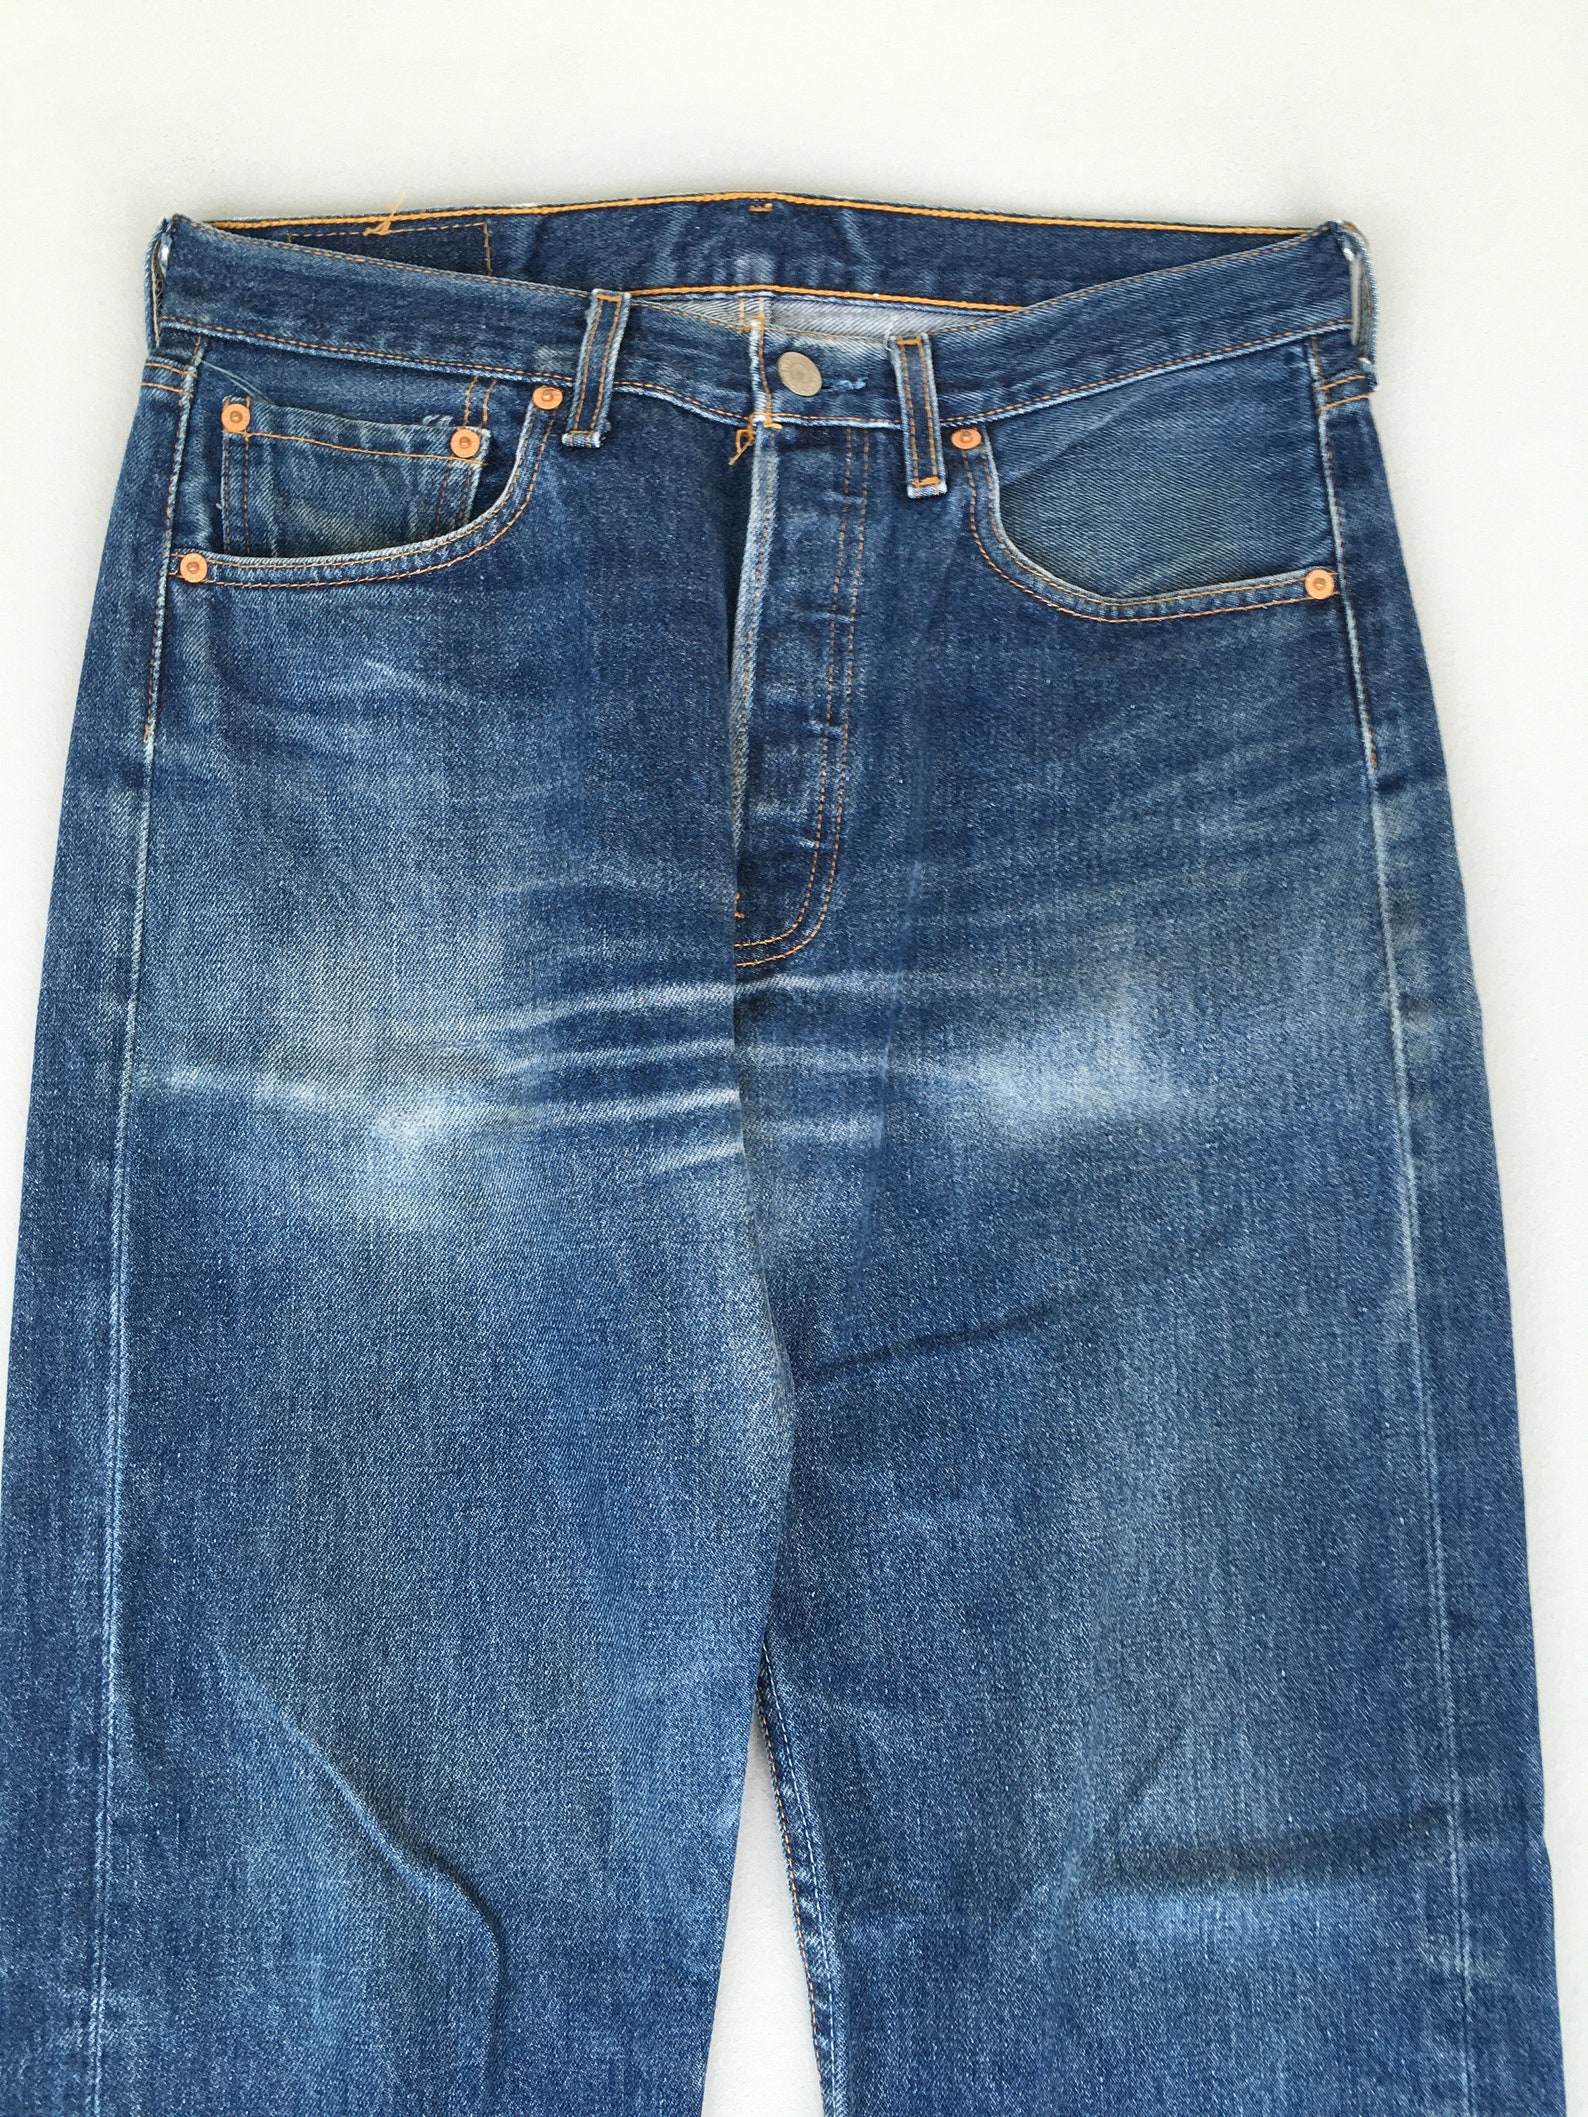 Size 30x30 Vintage Levis 501 Button Fly Jeans 1990s Levis - Etsy